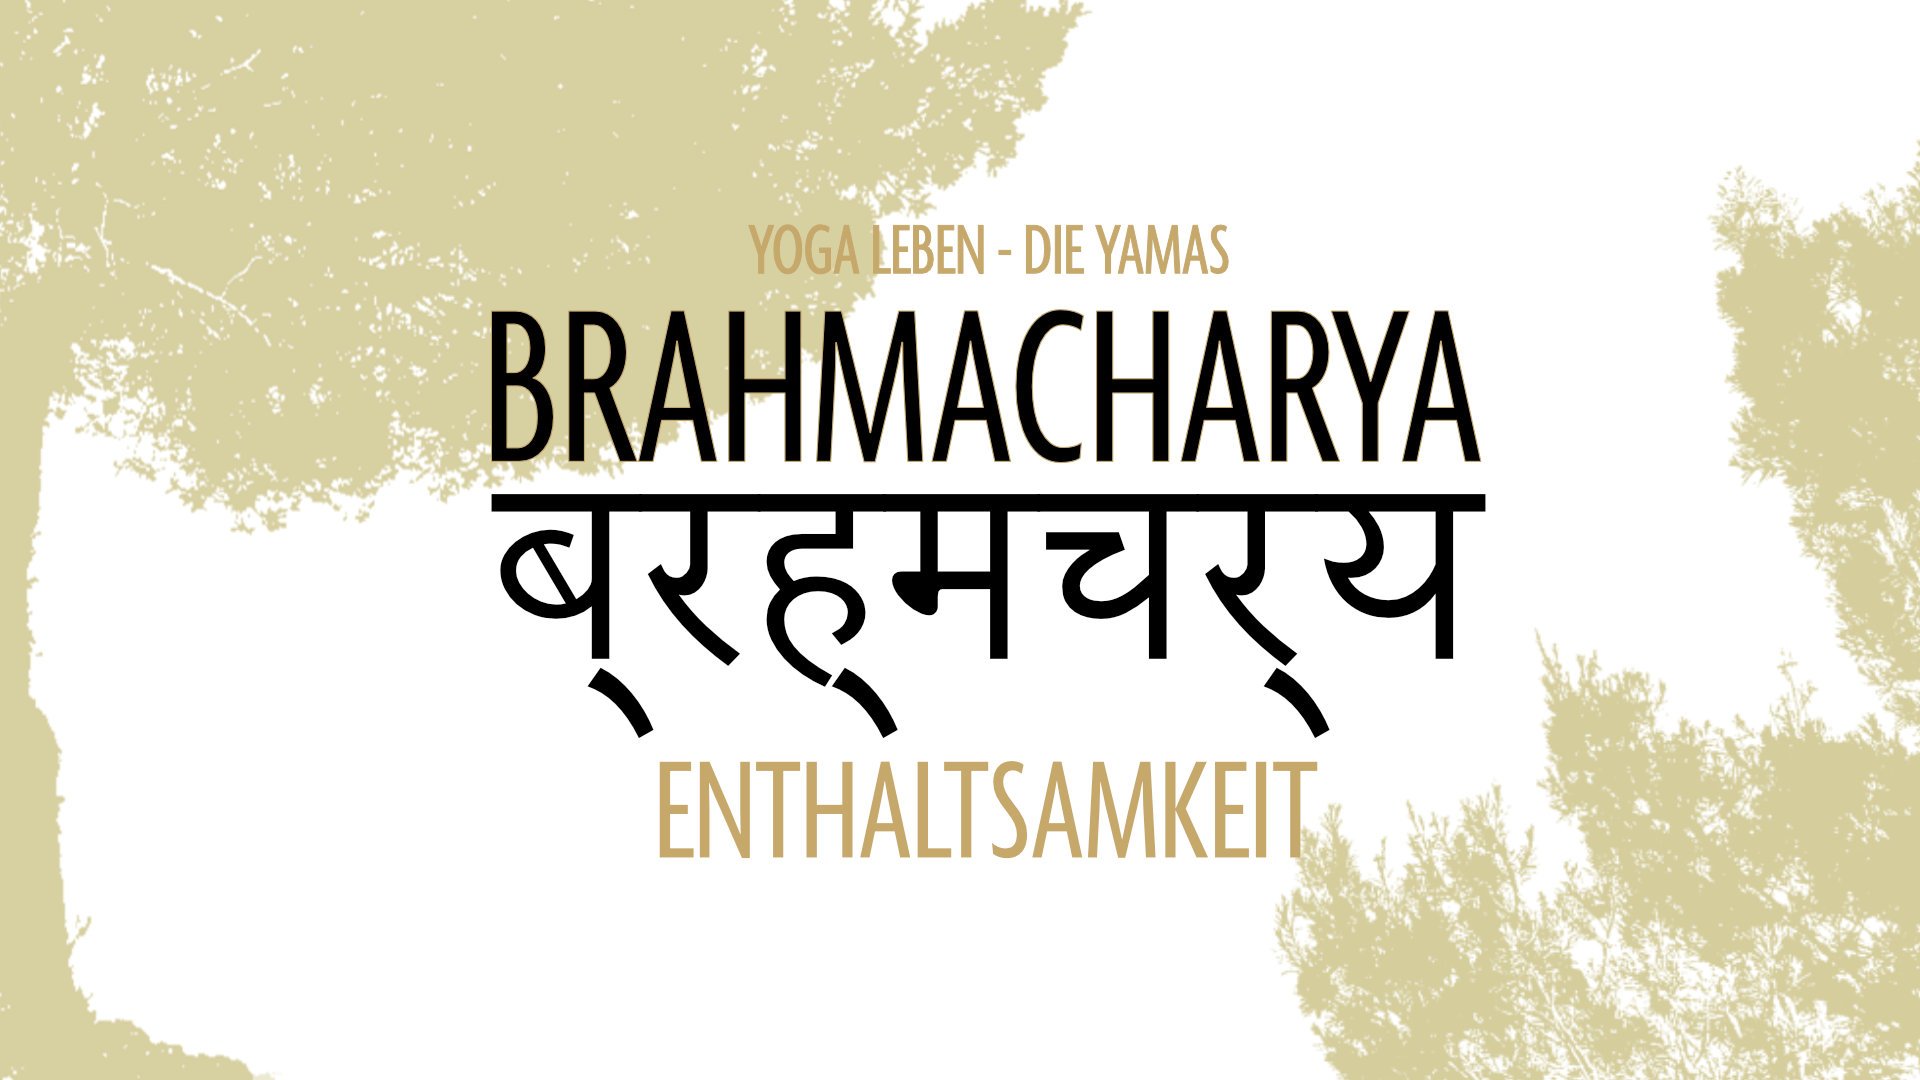 imme kock yoga die yamas workshop brahmacharya.jpg